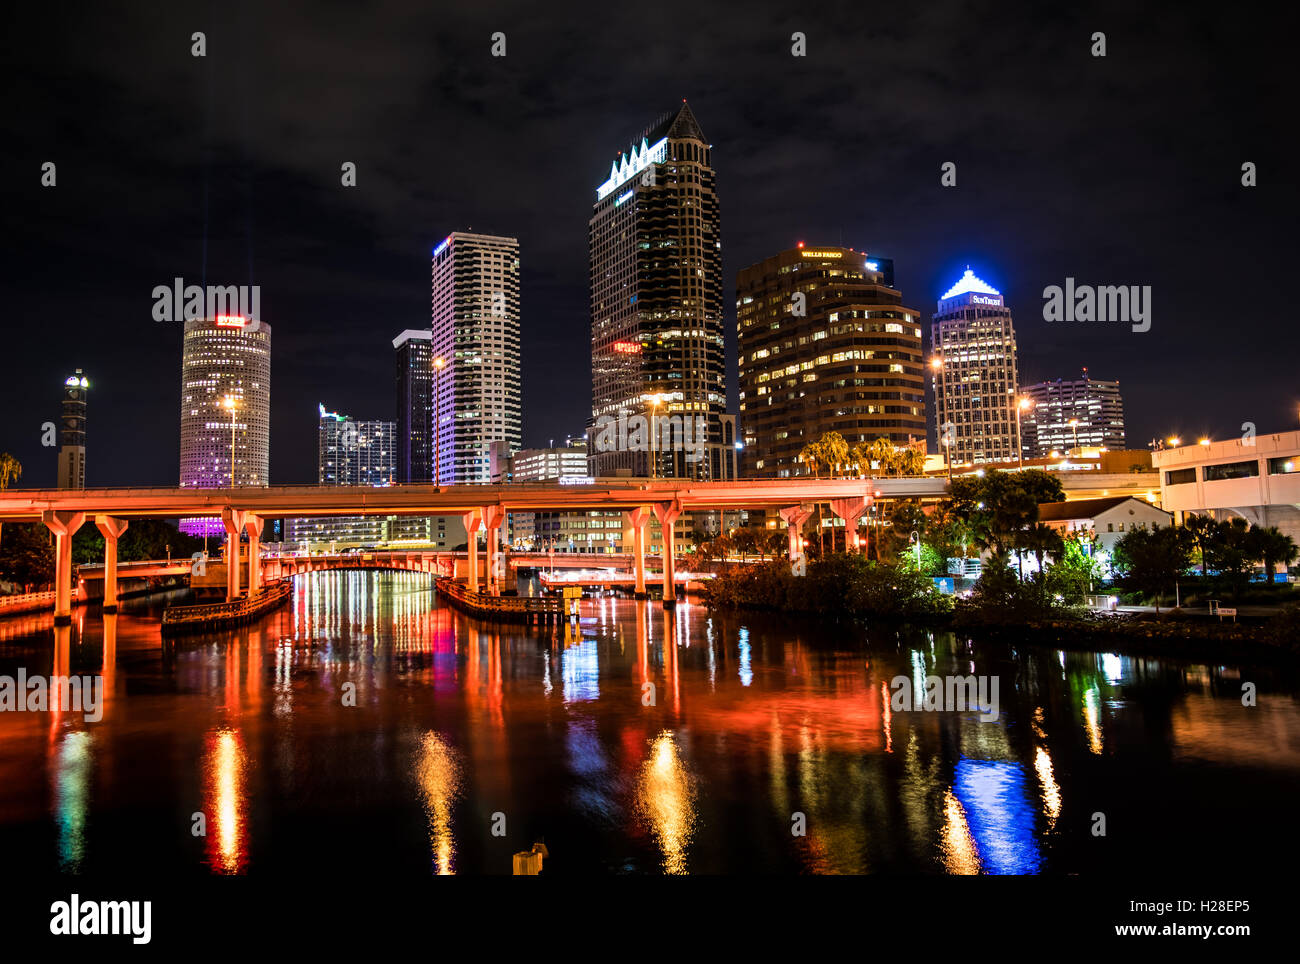 El centro de Tampa en la noche iluminados por LEDs Foto de stock